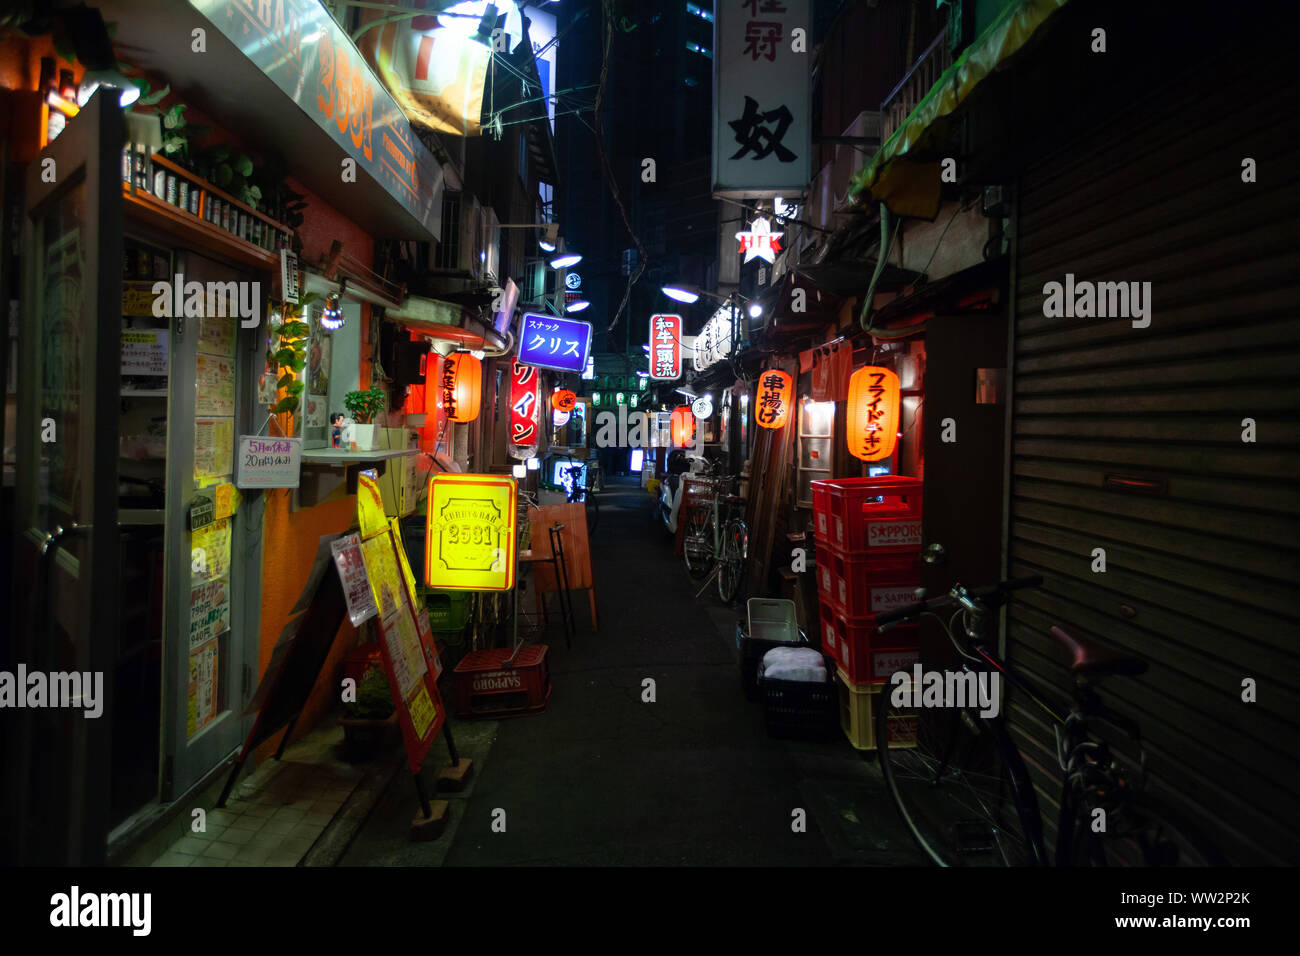 Illuminated signs of shops and bar at night Stock Photo